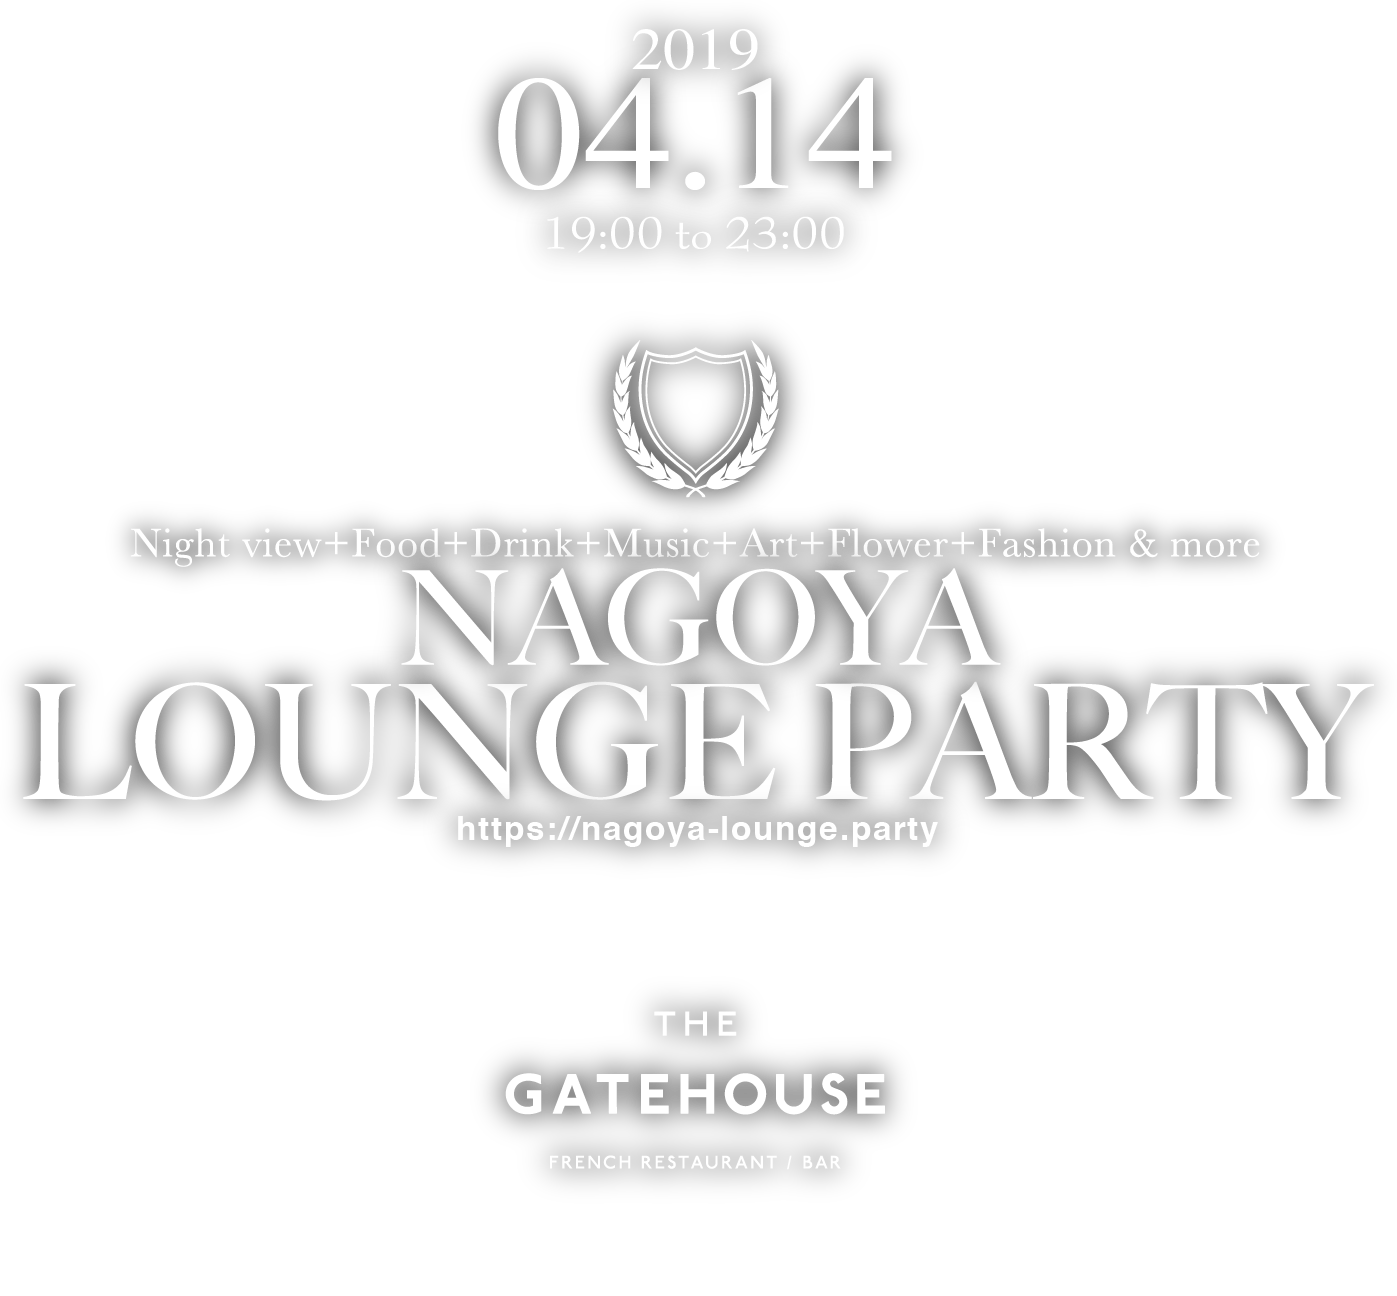 THE GATEHOUSE NAGOYA Lounge Party